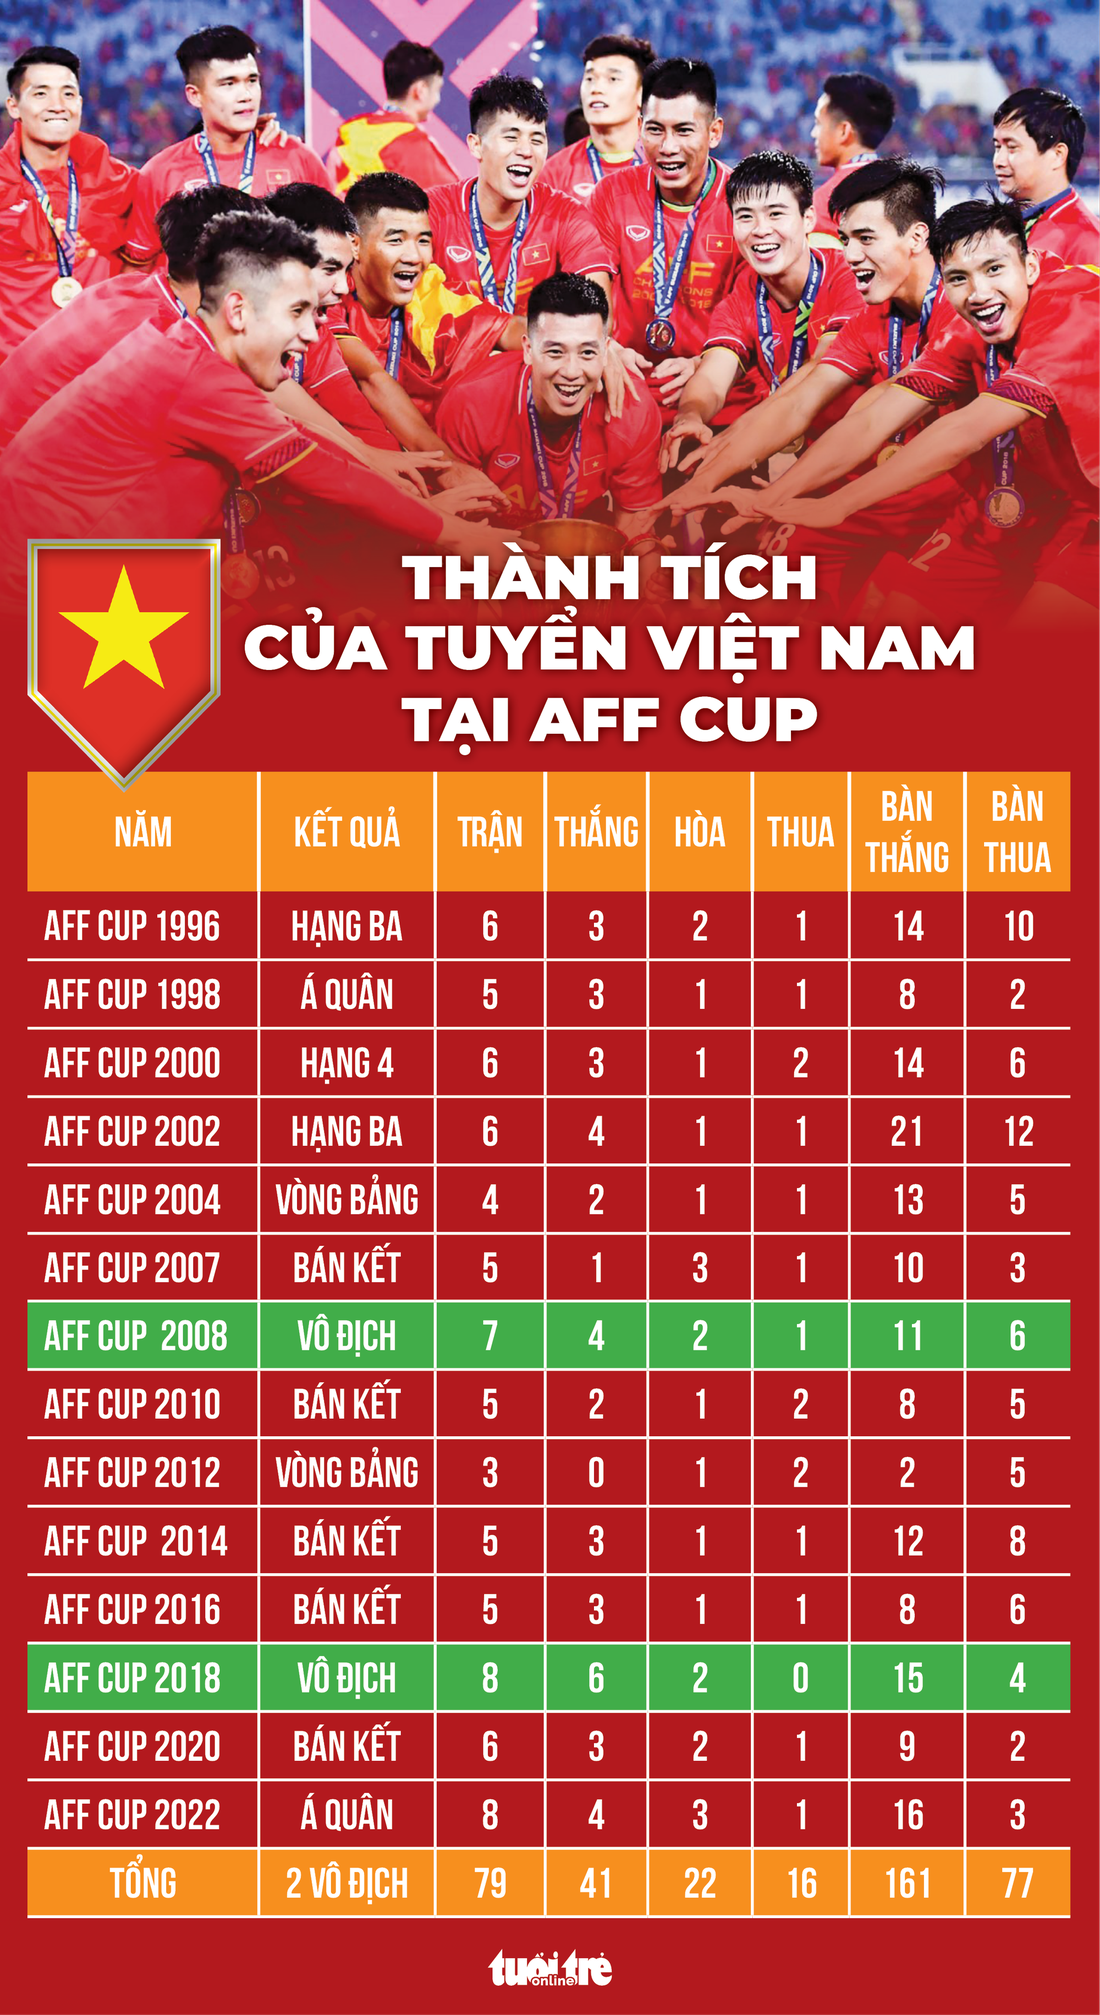 Thành tích của tuyển Việt Nam tại các kỳ ASEAN Cup (tiền thân là AFF Cup) trước đây - Đồ họa: AN BÌNH